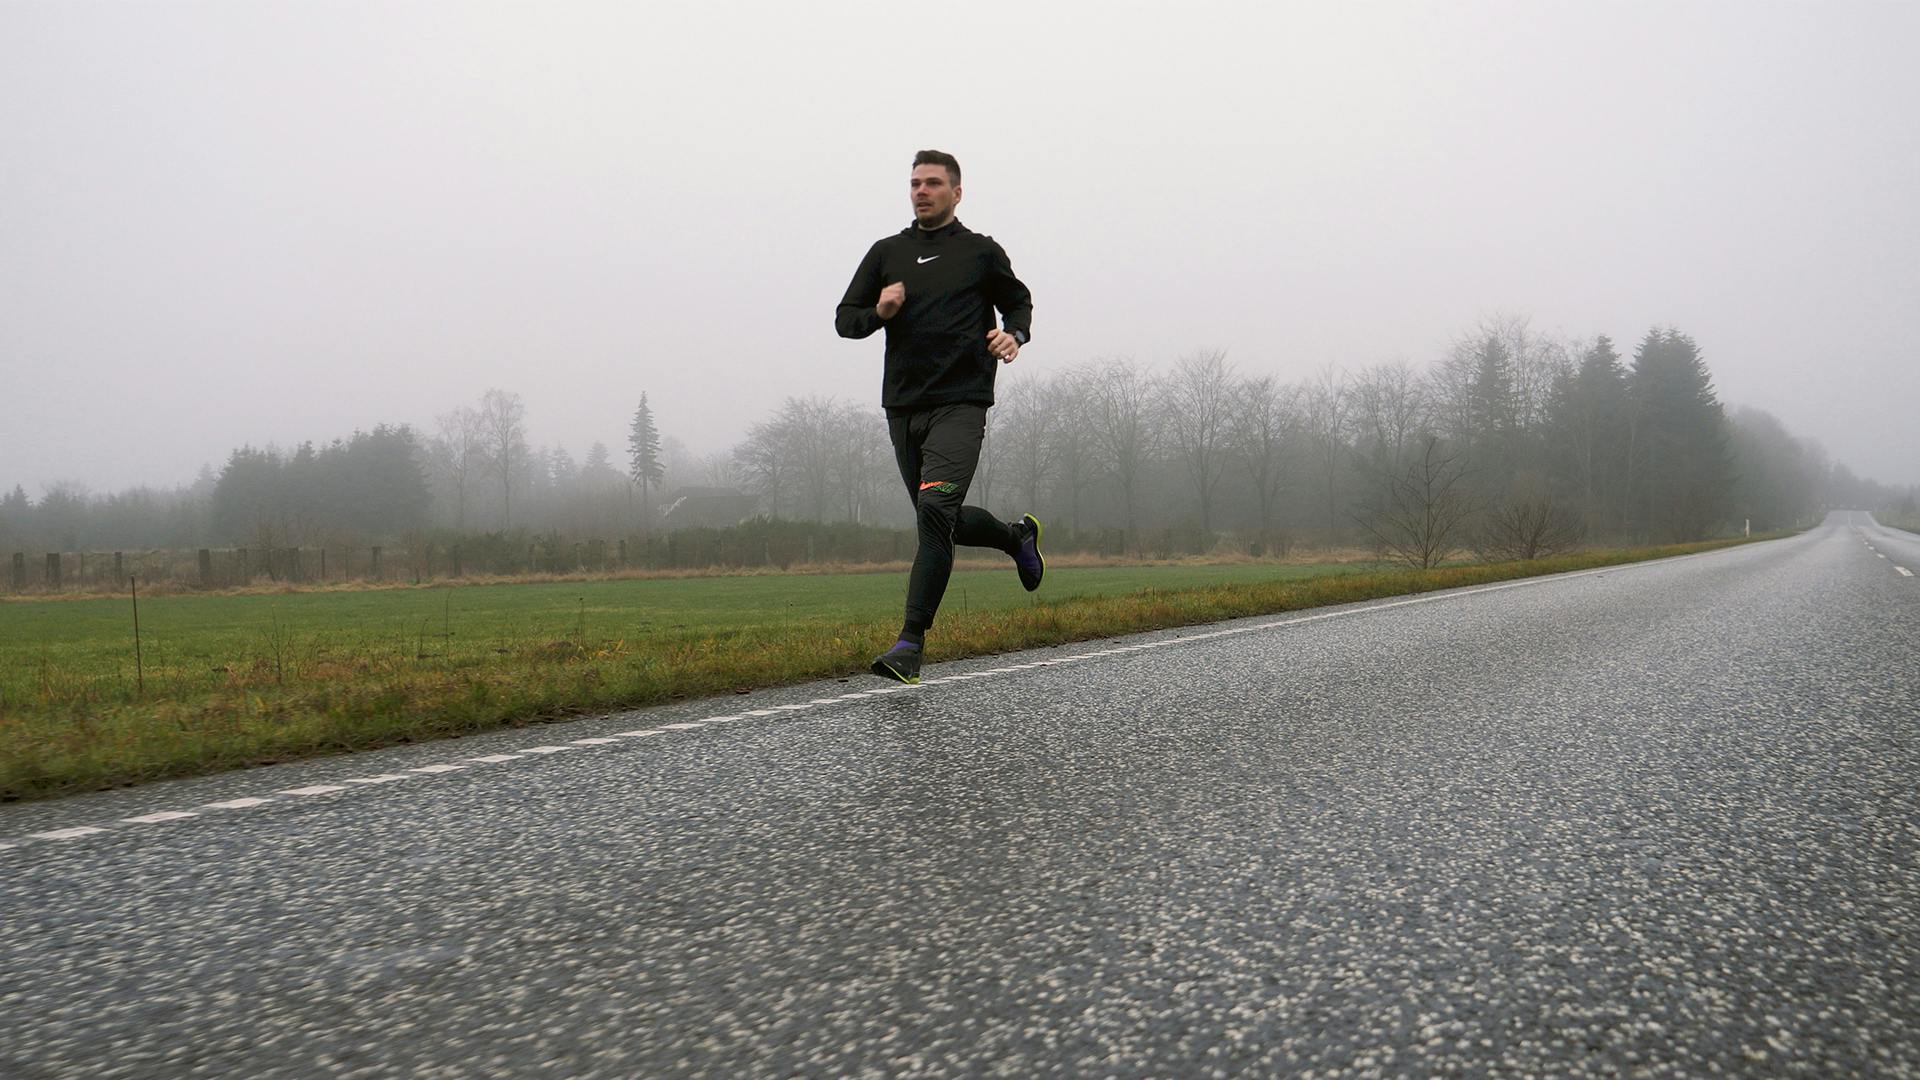 LØBEGUIDE: Sådan kommer du i gang med løb – uden skader